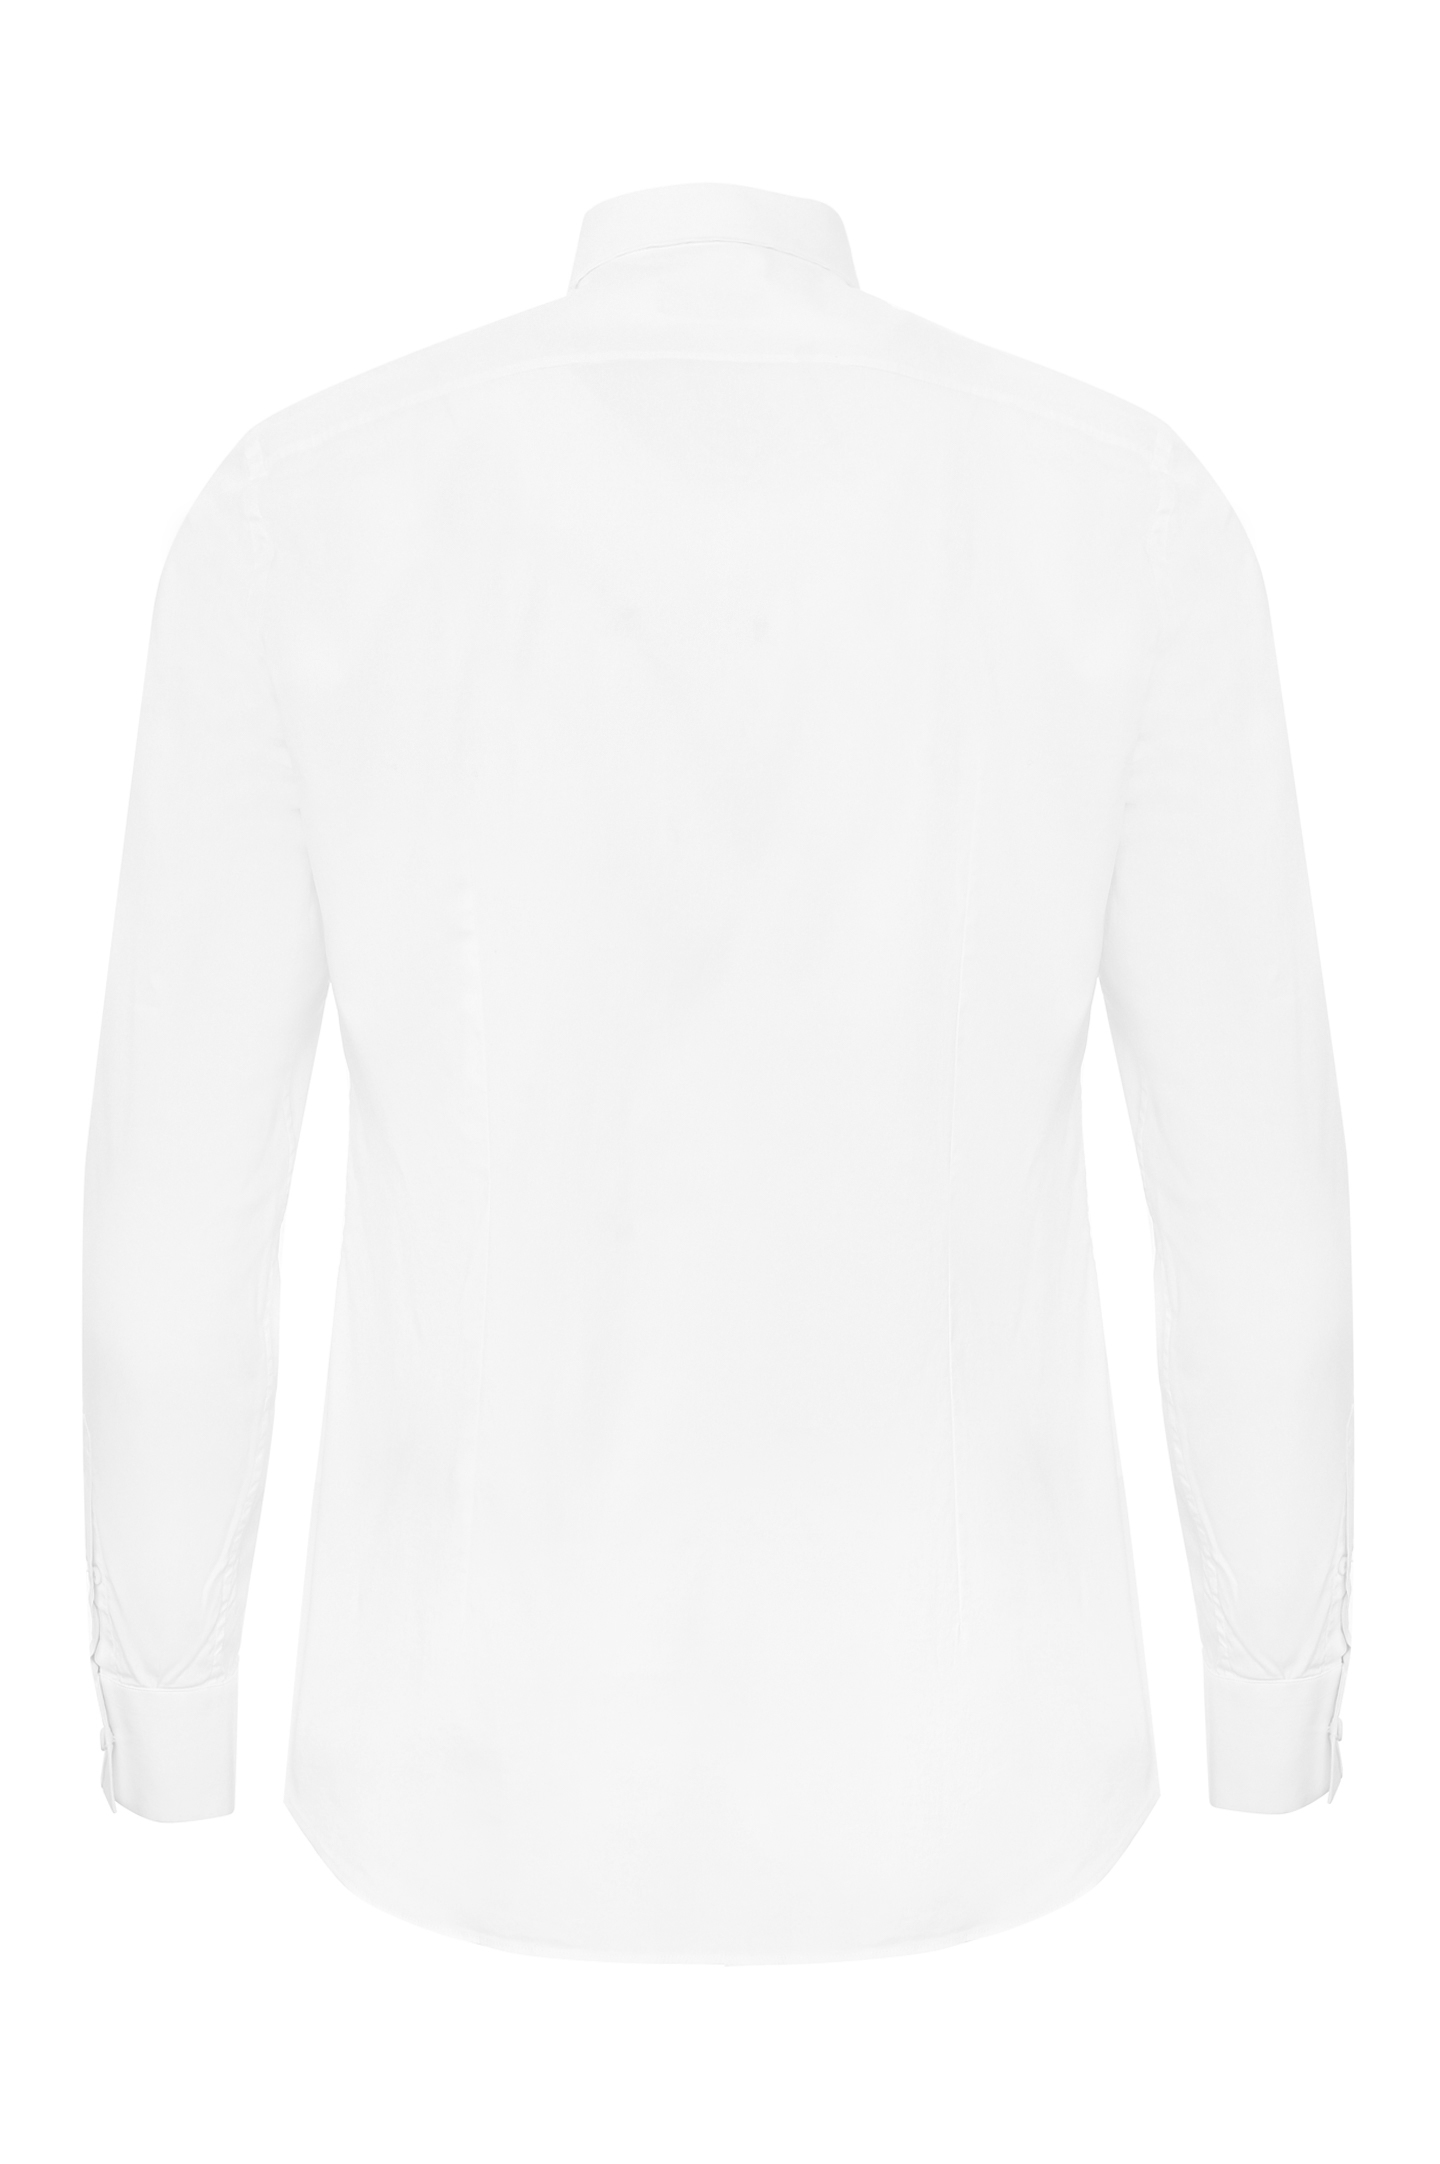 Рубашка PRADA UCN259 F62, цвет: Белый, Мужской